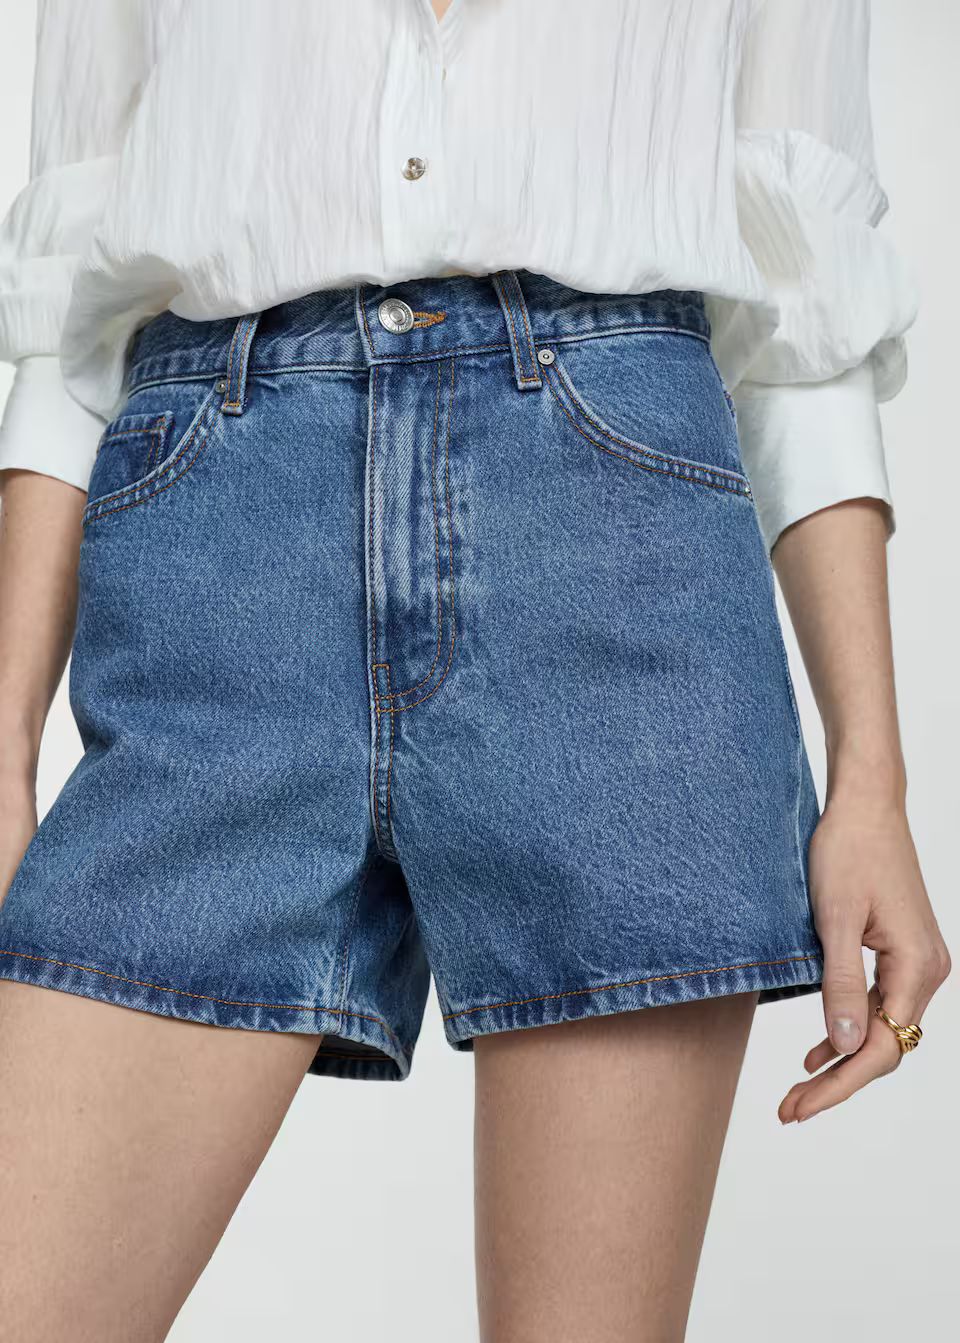 Jeans-shorts mit hoher taille -  Damen | Mango Deutschland | MANGO (DE)